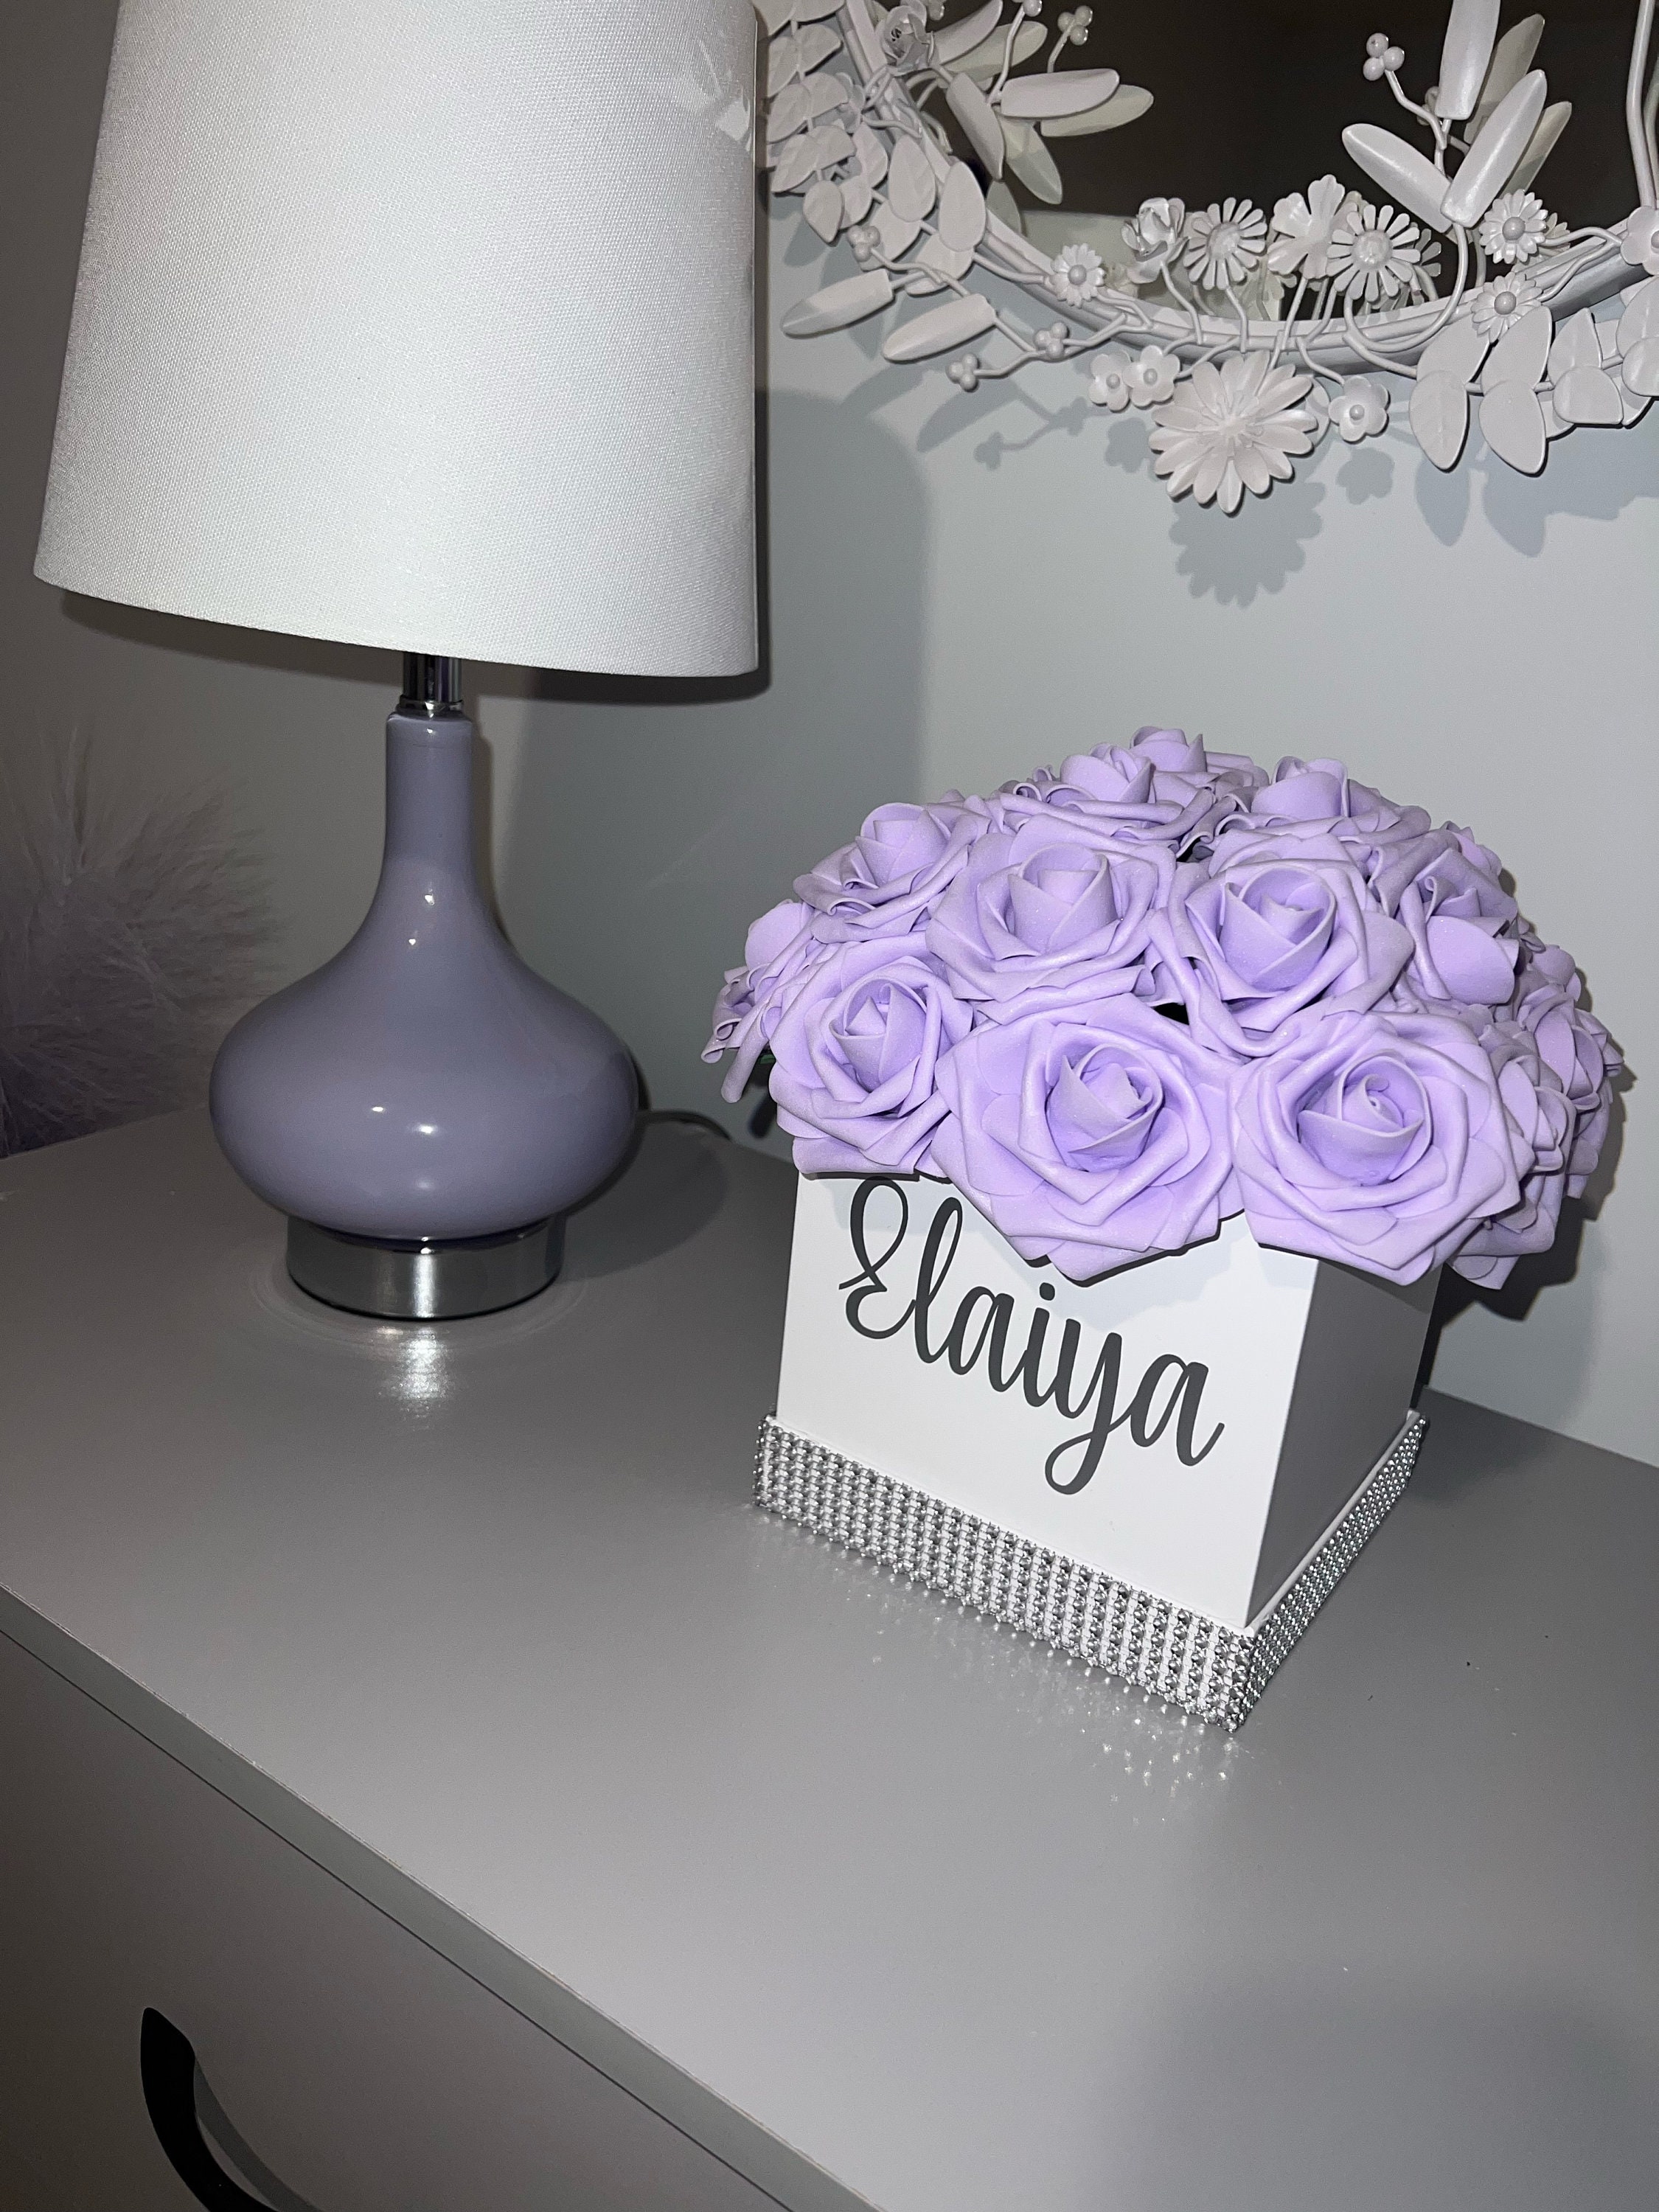 CHANEL inspired Rose Box #roseboxdiy #Luxuryflowers #dcbusiness #thefl